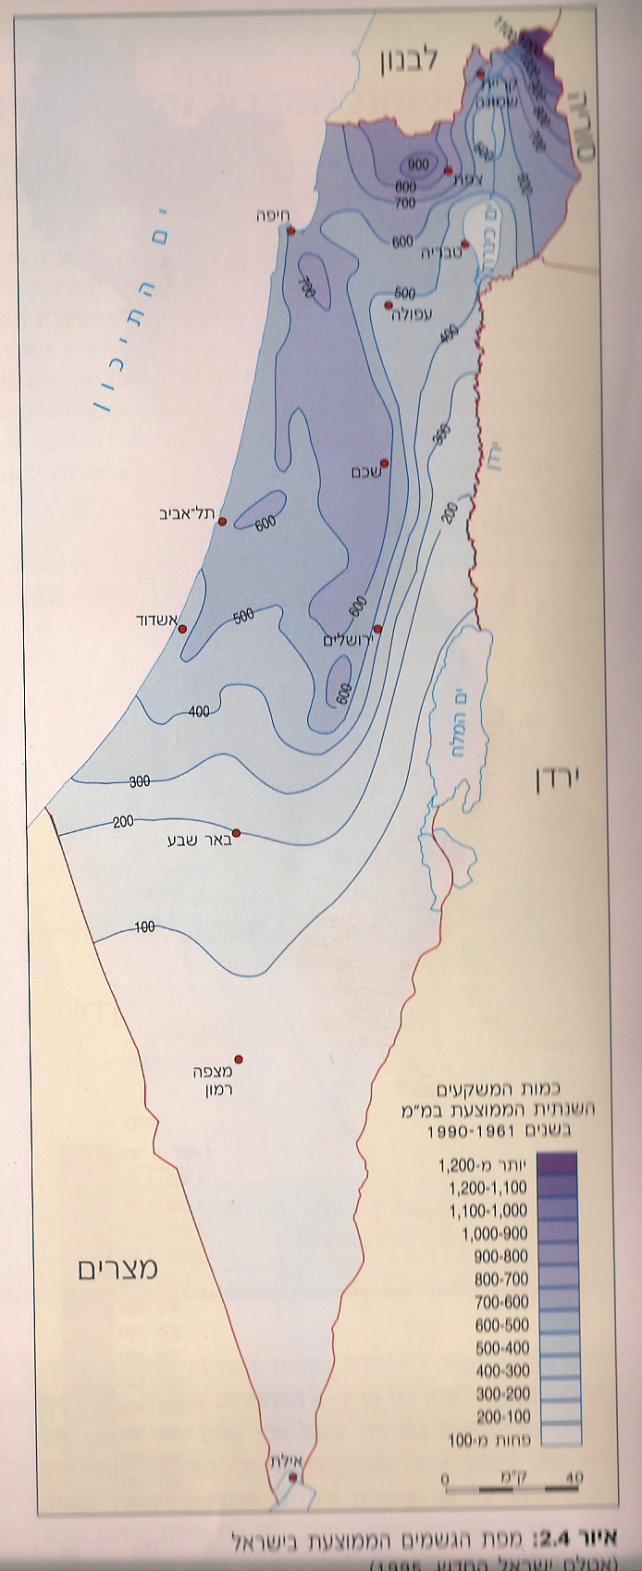 Mean Annual Precipitation 1961-1990 Sea of Galilee בעיית השונות המרחבית של מטר השמיים Tel Aviv Jerusalem הצפון